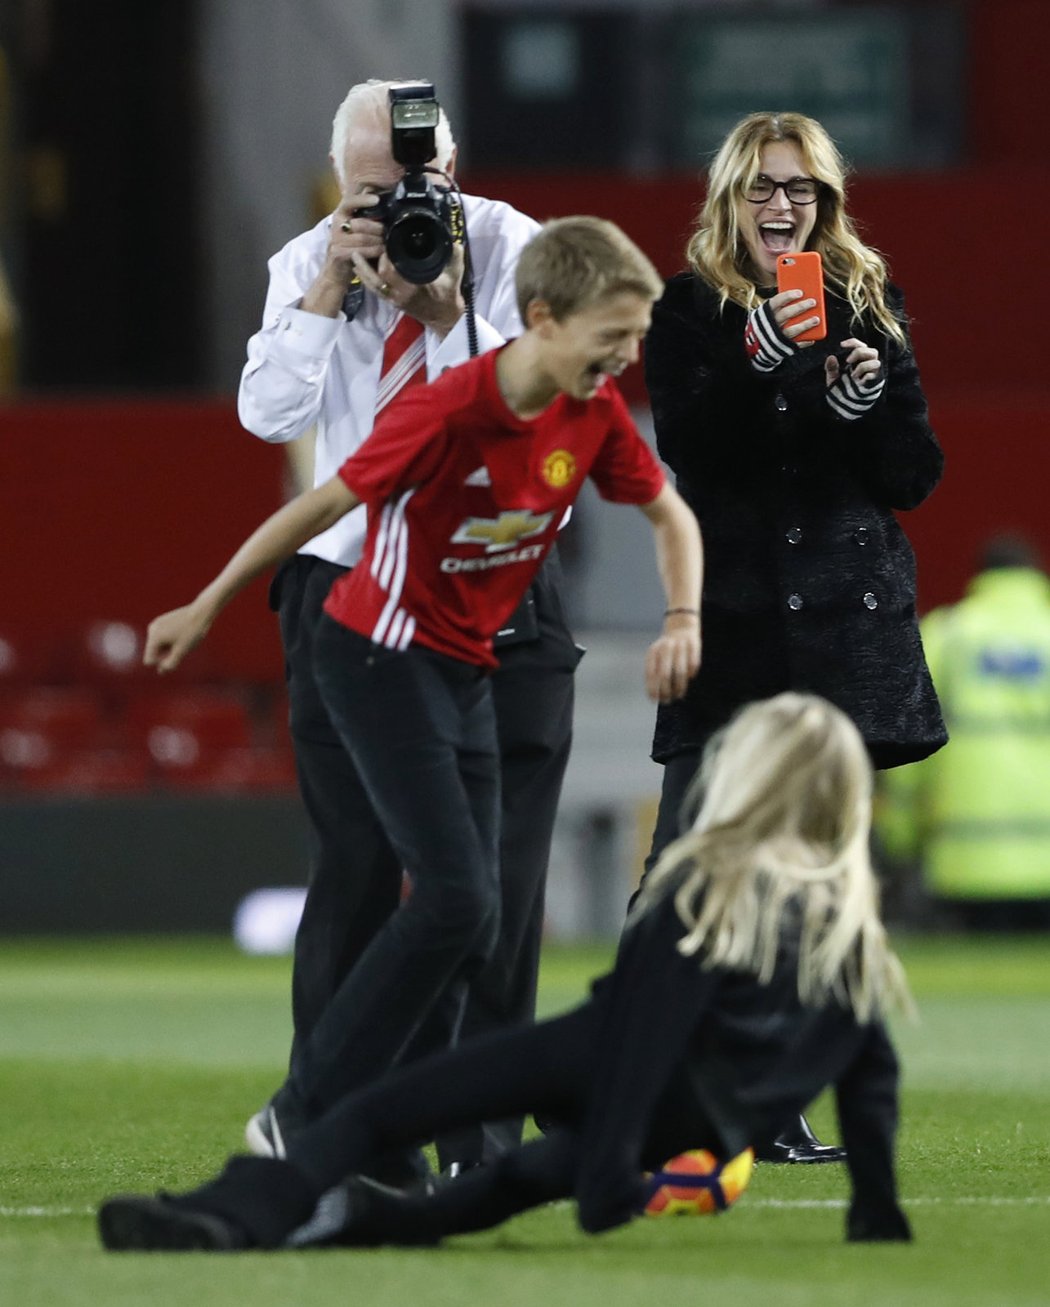 Herečka Julia Roberts, která se považuje za fotbalovou mámu, natáčí na Old Trafford svou dceru, jež skluzem sestřelila další z dětí pohybujících se po trávníku